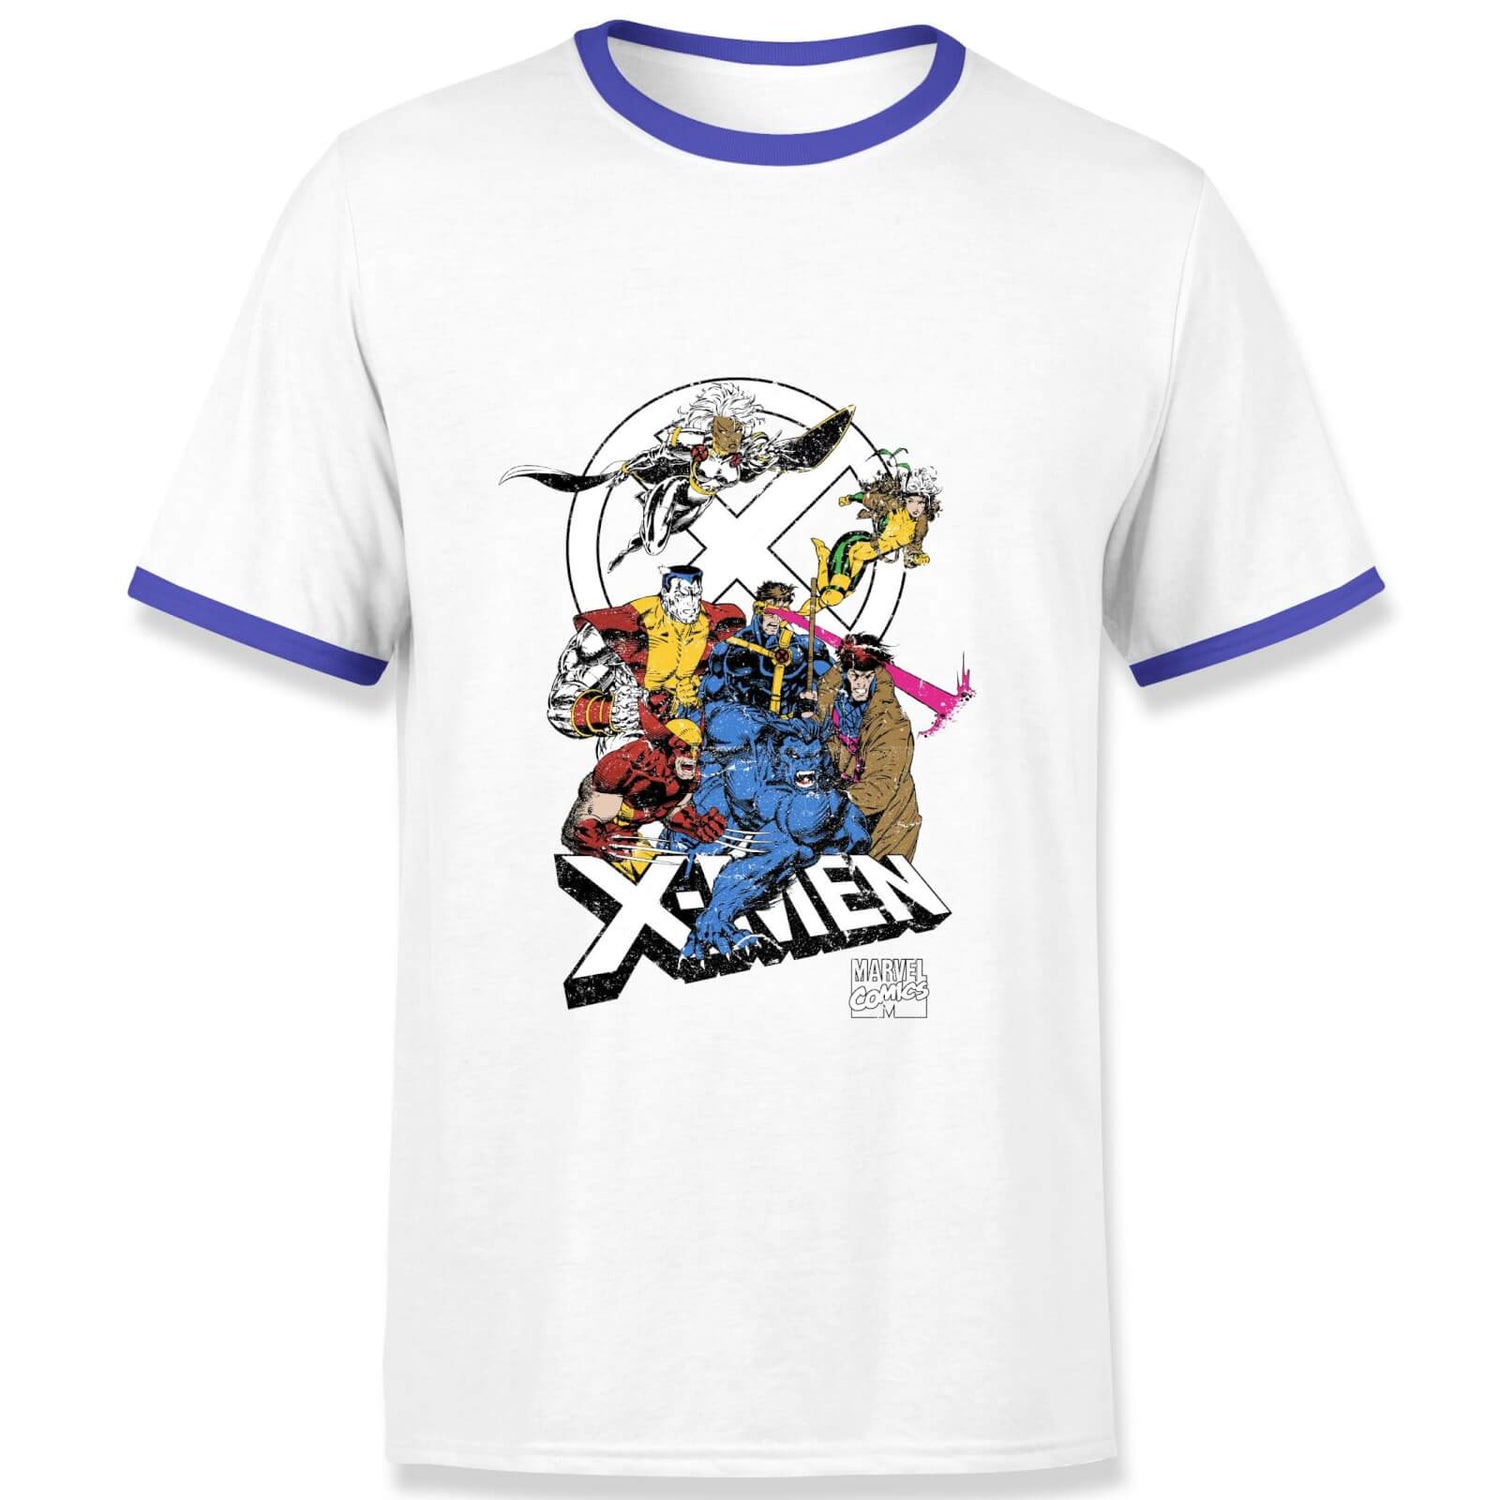 X-Men Super Team Men's Ringer T-Shirt - White/Navy